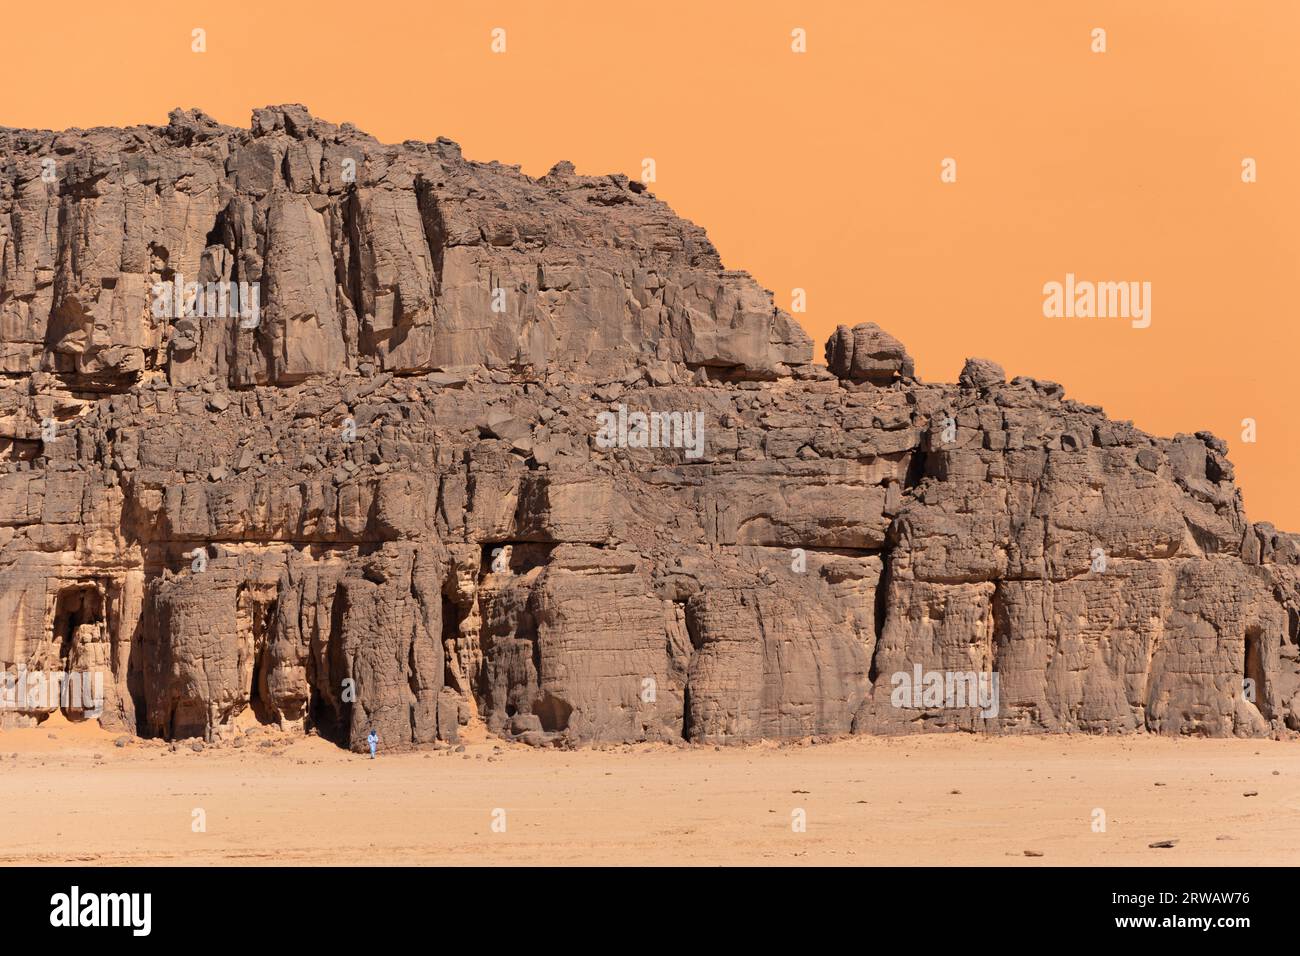 Sahara desert landscape Stock Photo